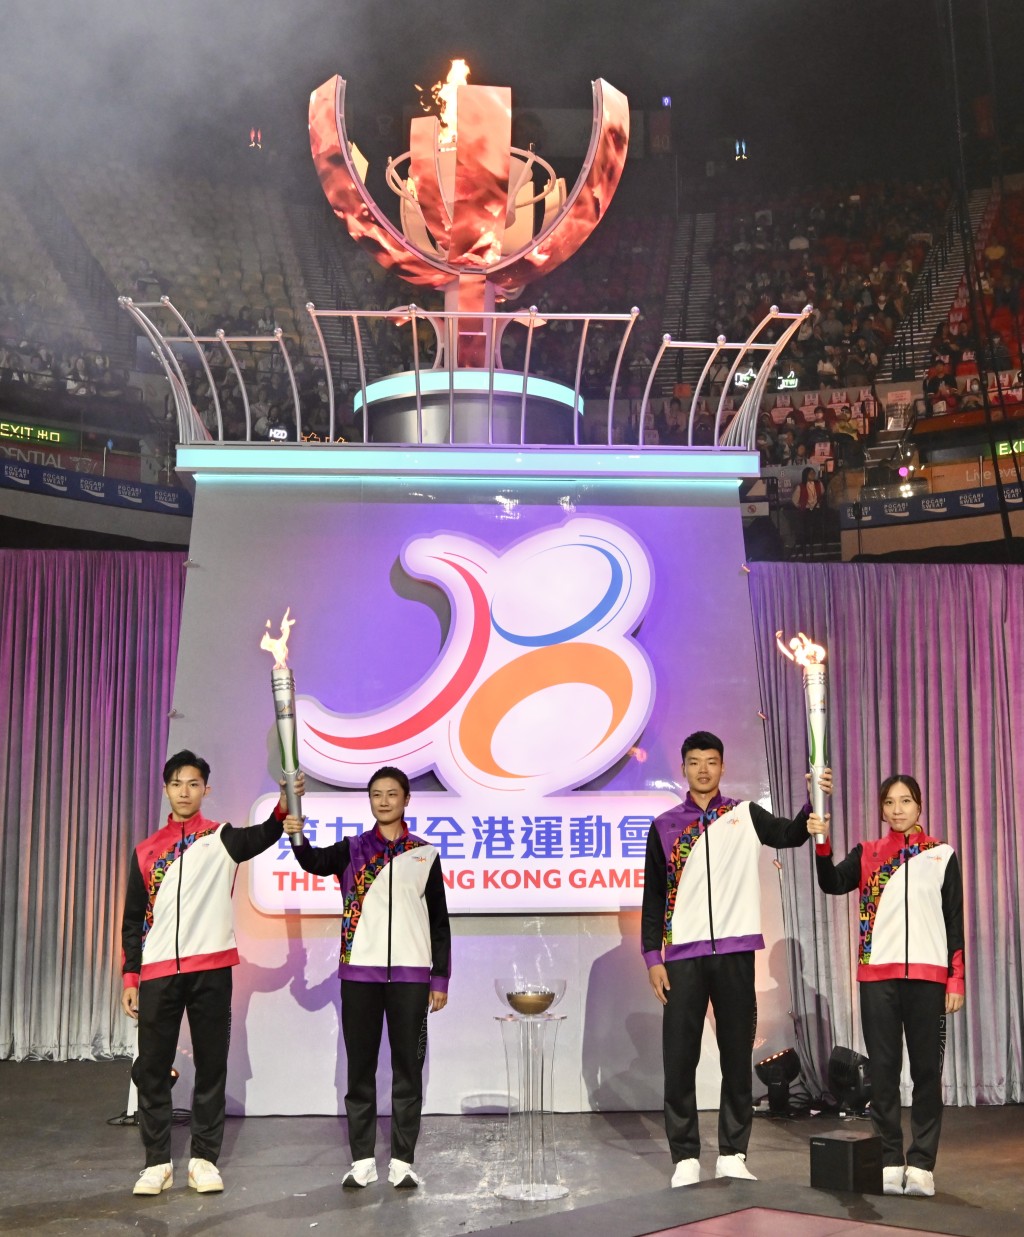 国家奥运金牌运动员丁宁（左二）和王懿律（右二）与香港奖牌运动员许得恩（左一）和苏慧音（右一）在全港运动会开幕典礼燃点圣火。